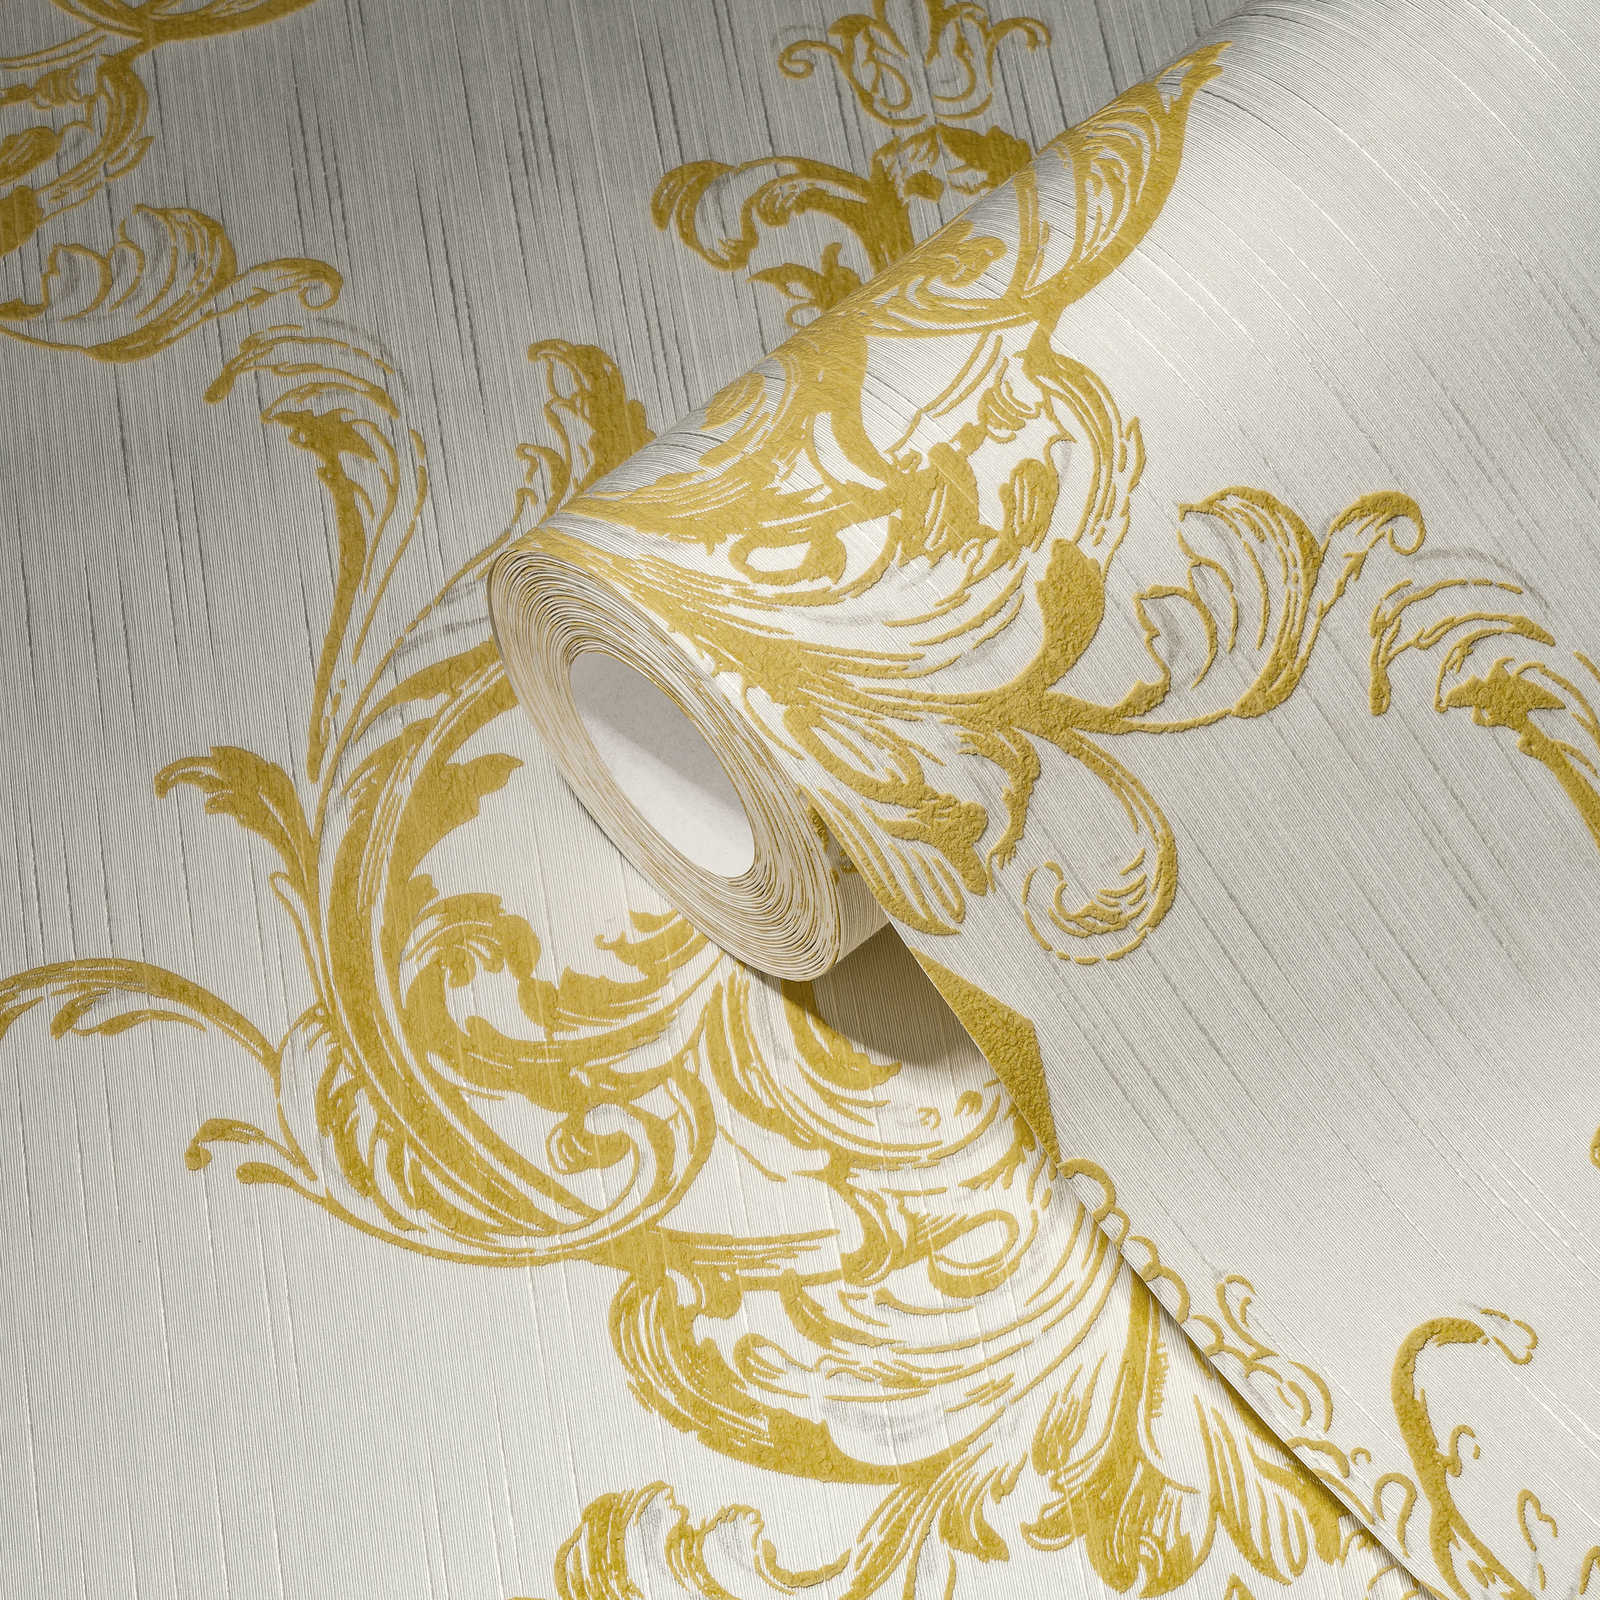             Papier peint intissé ornement historique Design avec effet structuré - or, blanc
        